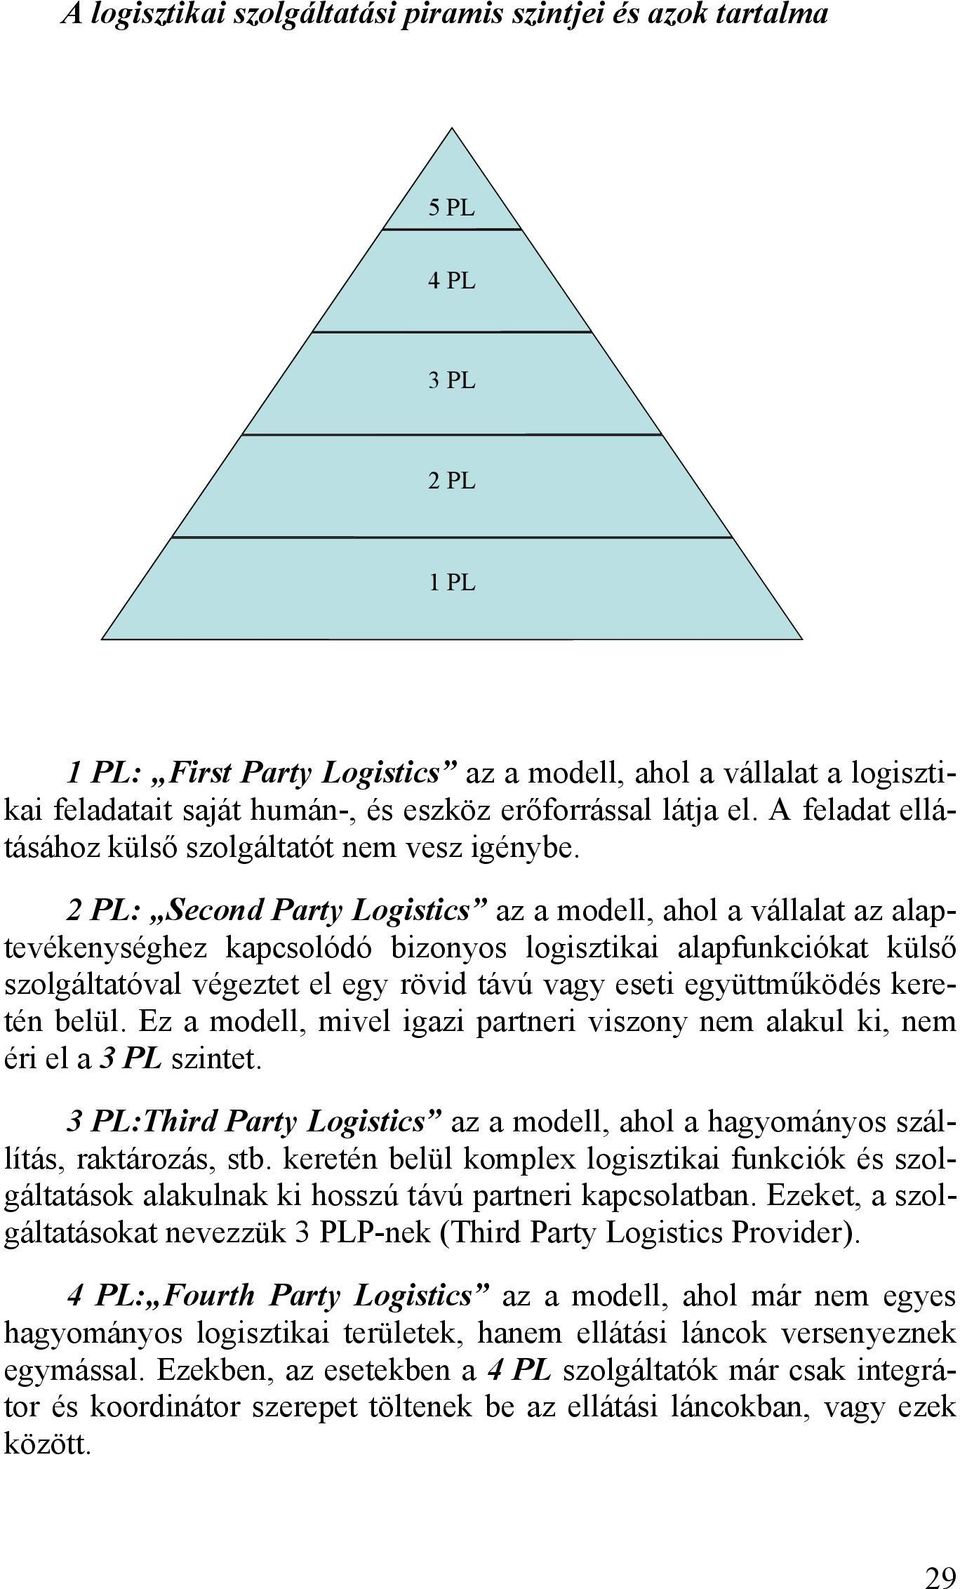 2 PL: Second Party Logistics az a modell, ahol a vállalat az alaptevékenységhez kapcsolódó bizonyos logisztikai alapfunkciókat külső szolgáltatóval végeztet el egy rövid távú vagy eseti együttműködés